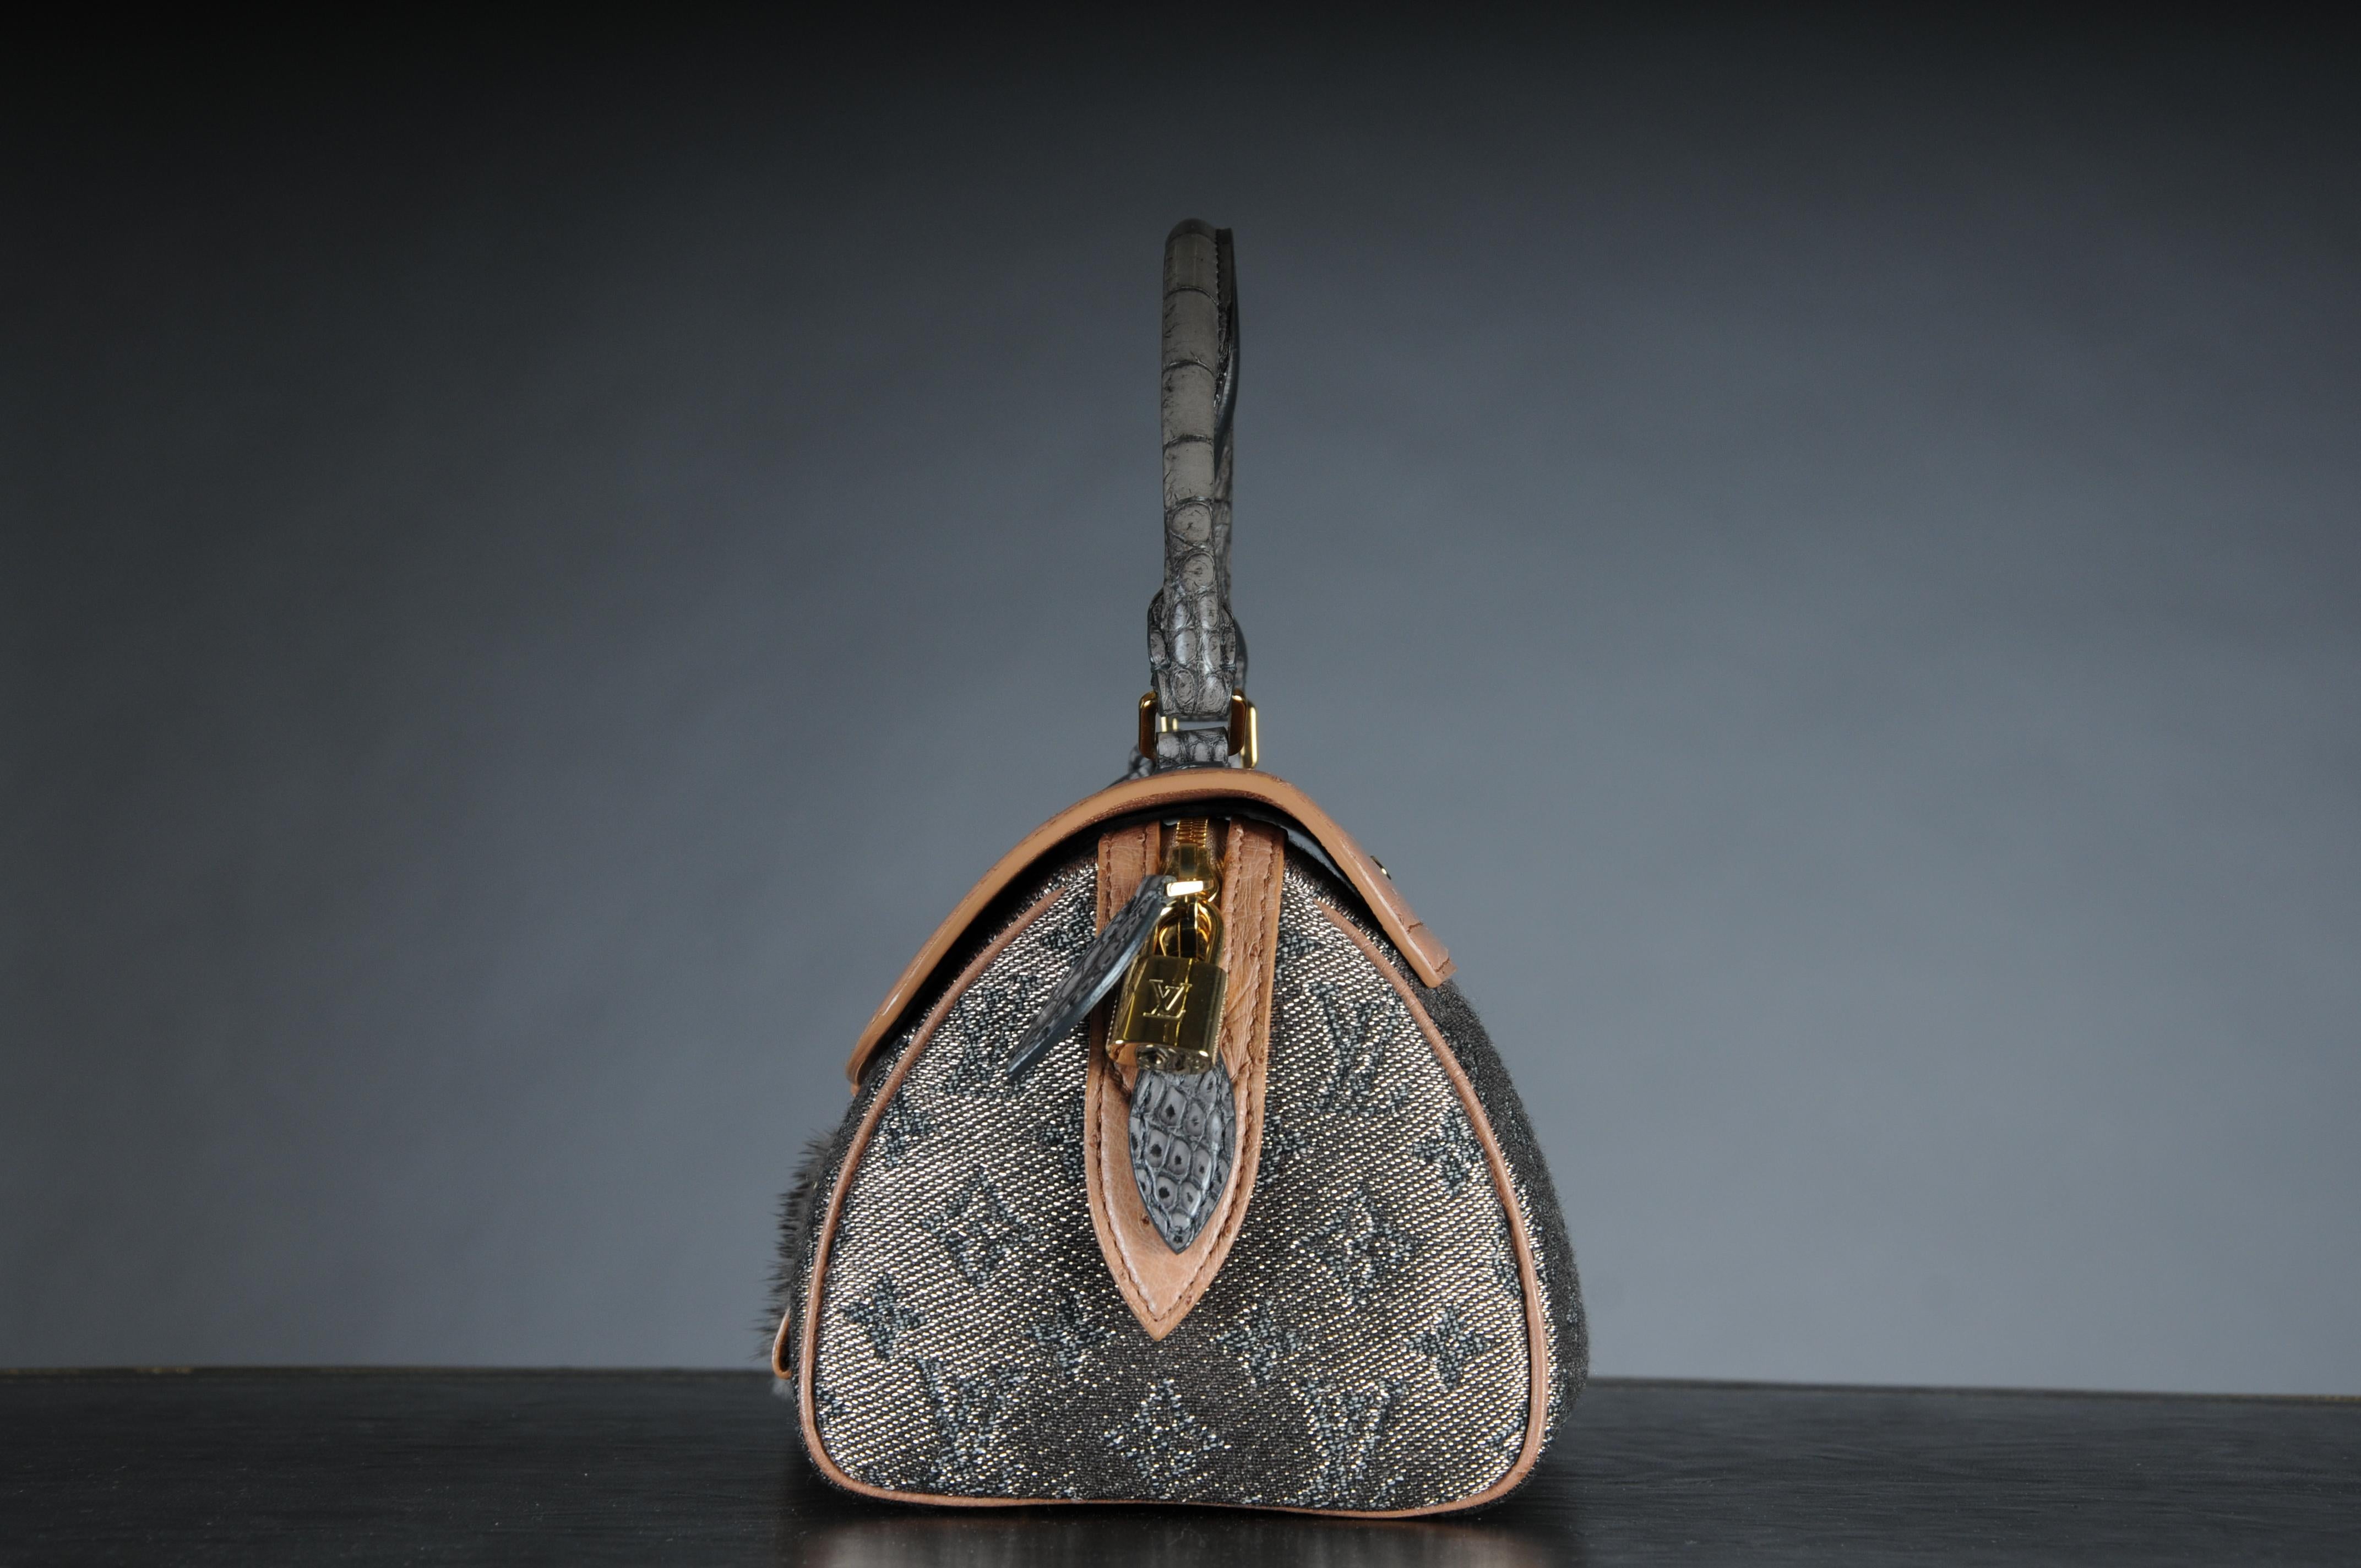 Ikonische Louis Vuitton Tasche, Modell Comédie Carousel, Produktionsjahr 2010/2011, aus Lurexstoff mit Ledereinsätzen und goldenen Beschlägen. Ausgestattet mit einem Reißverschluss und einer silbernen Lederfrontklappe mit Verschlusshaken.